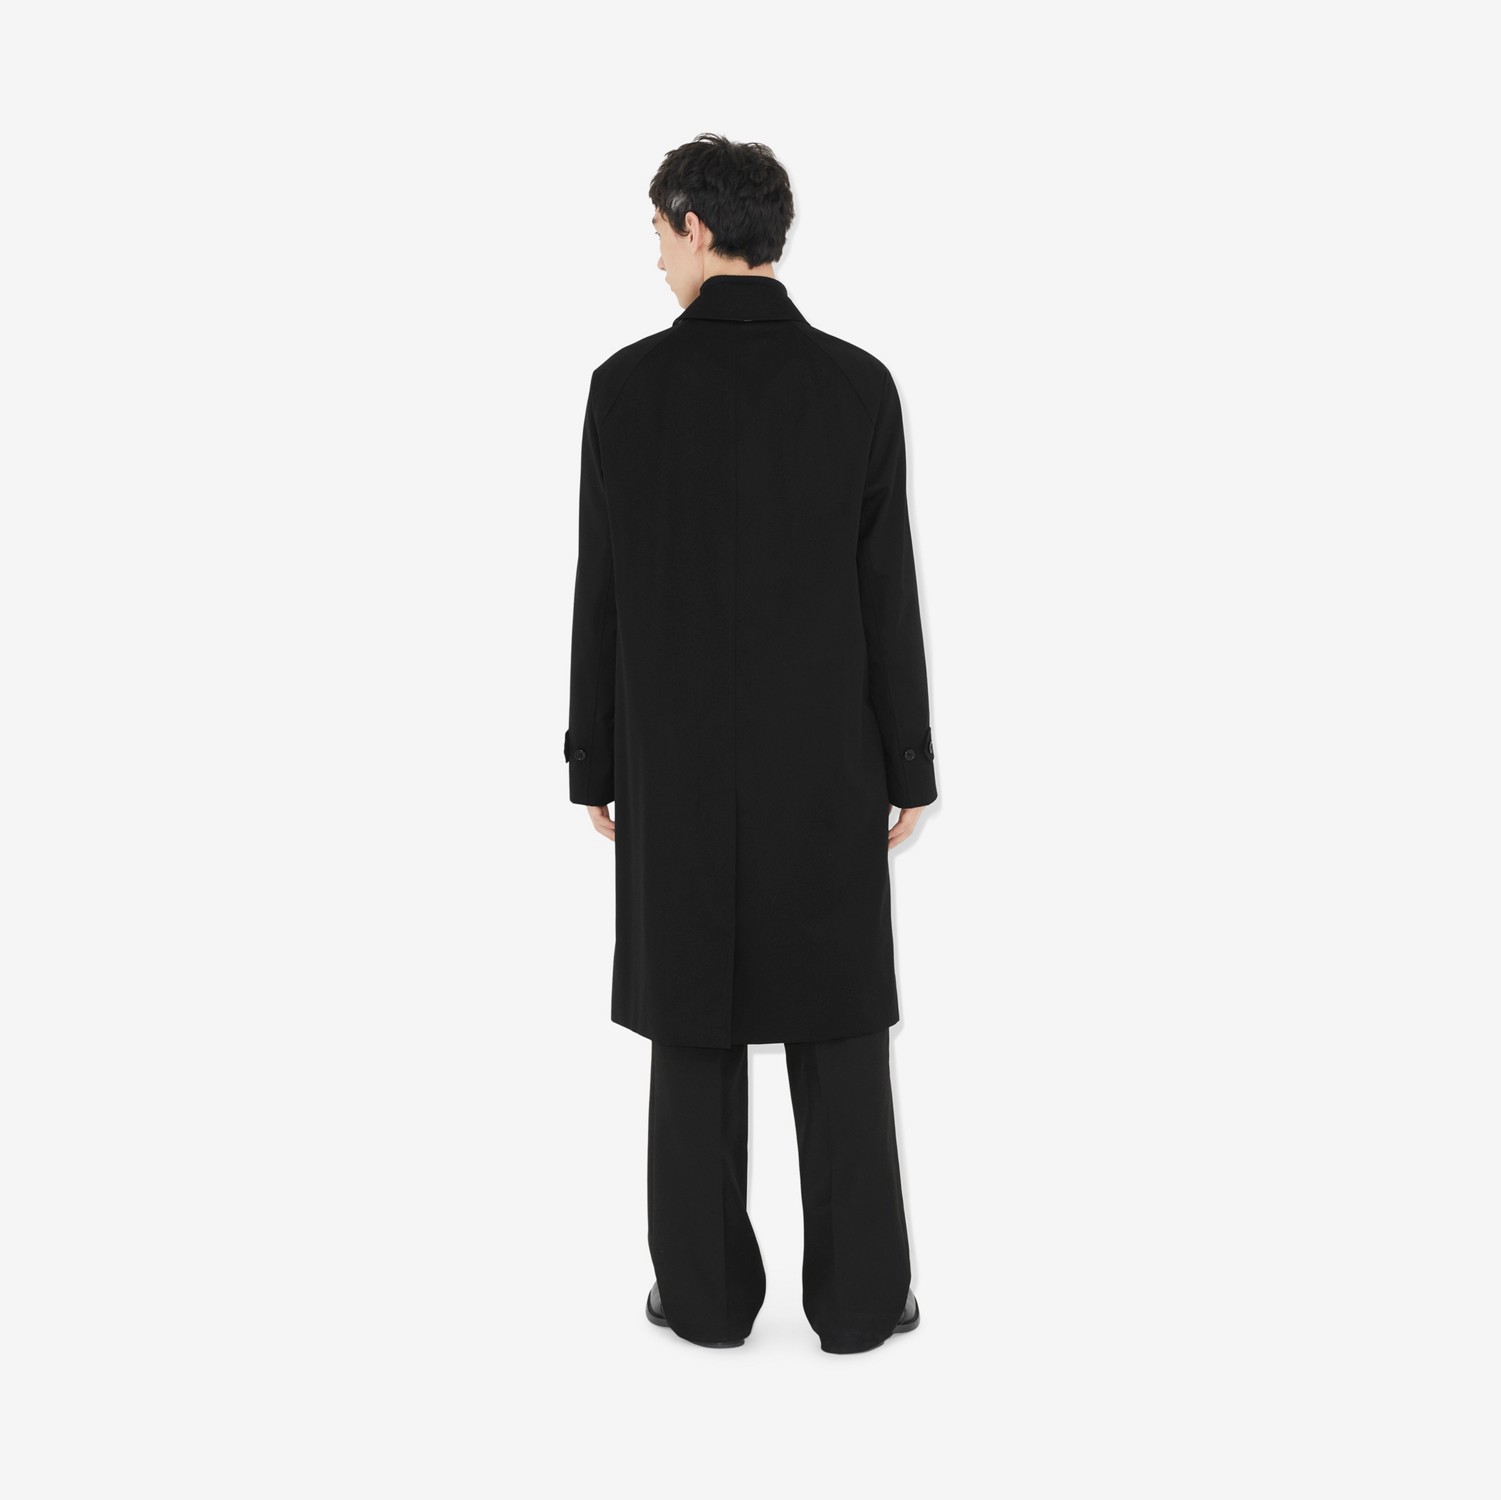 卡姆登版型 – Heritage 轻便大衣 (黑色) - 男士 | Burberry® 博柏利官网